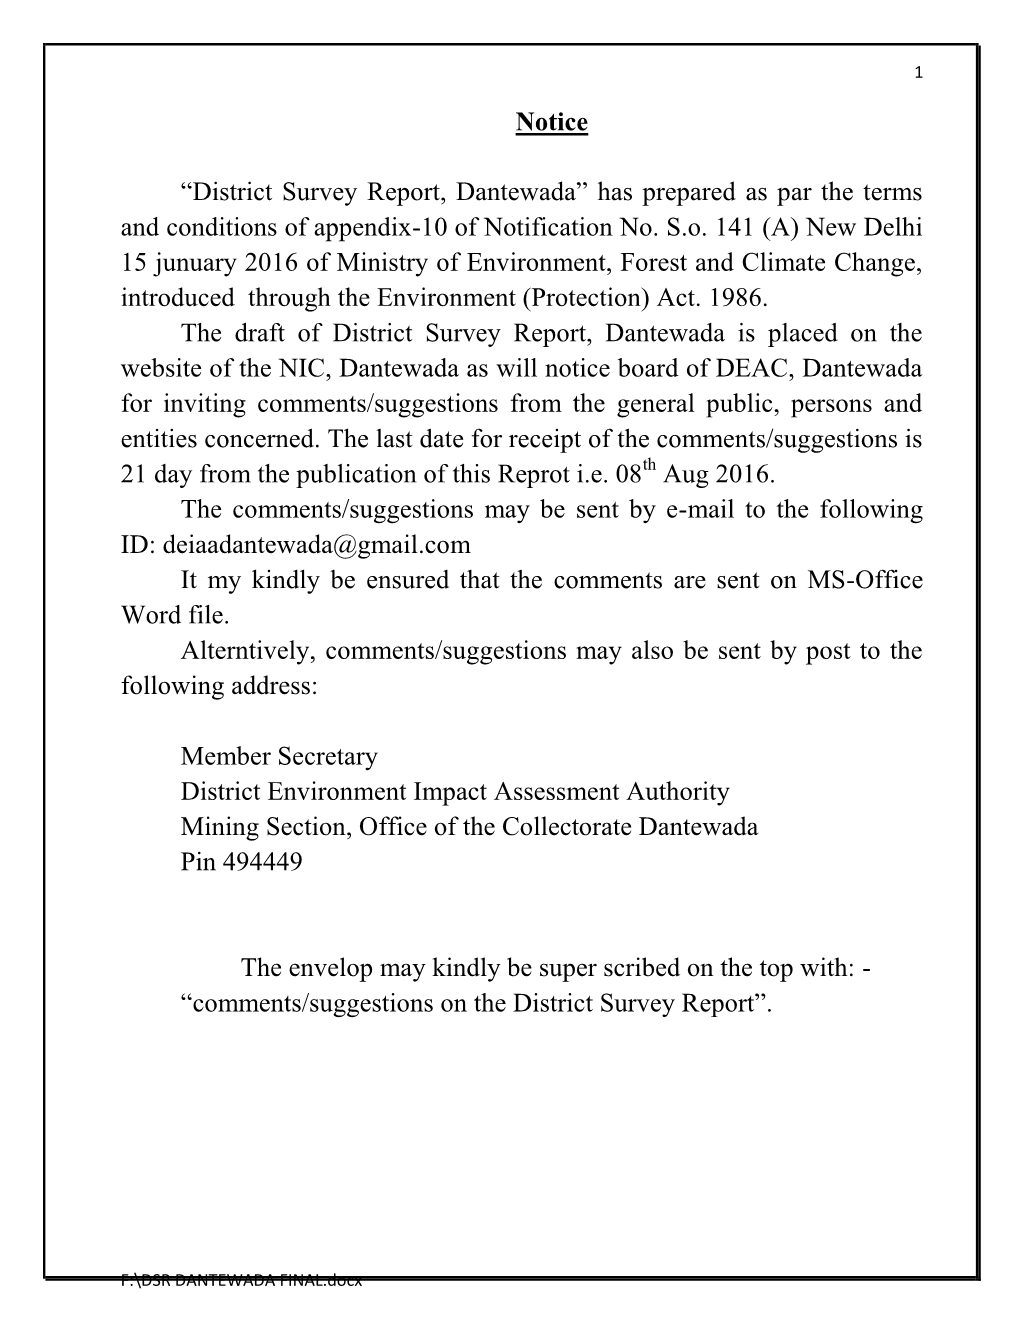 Notice “District Survey Report, Dantewada” Has Prepared As Par